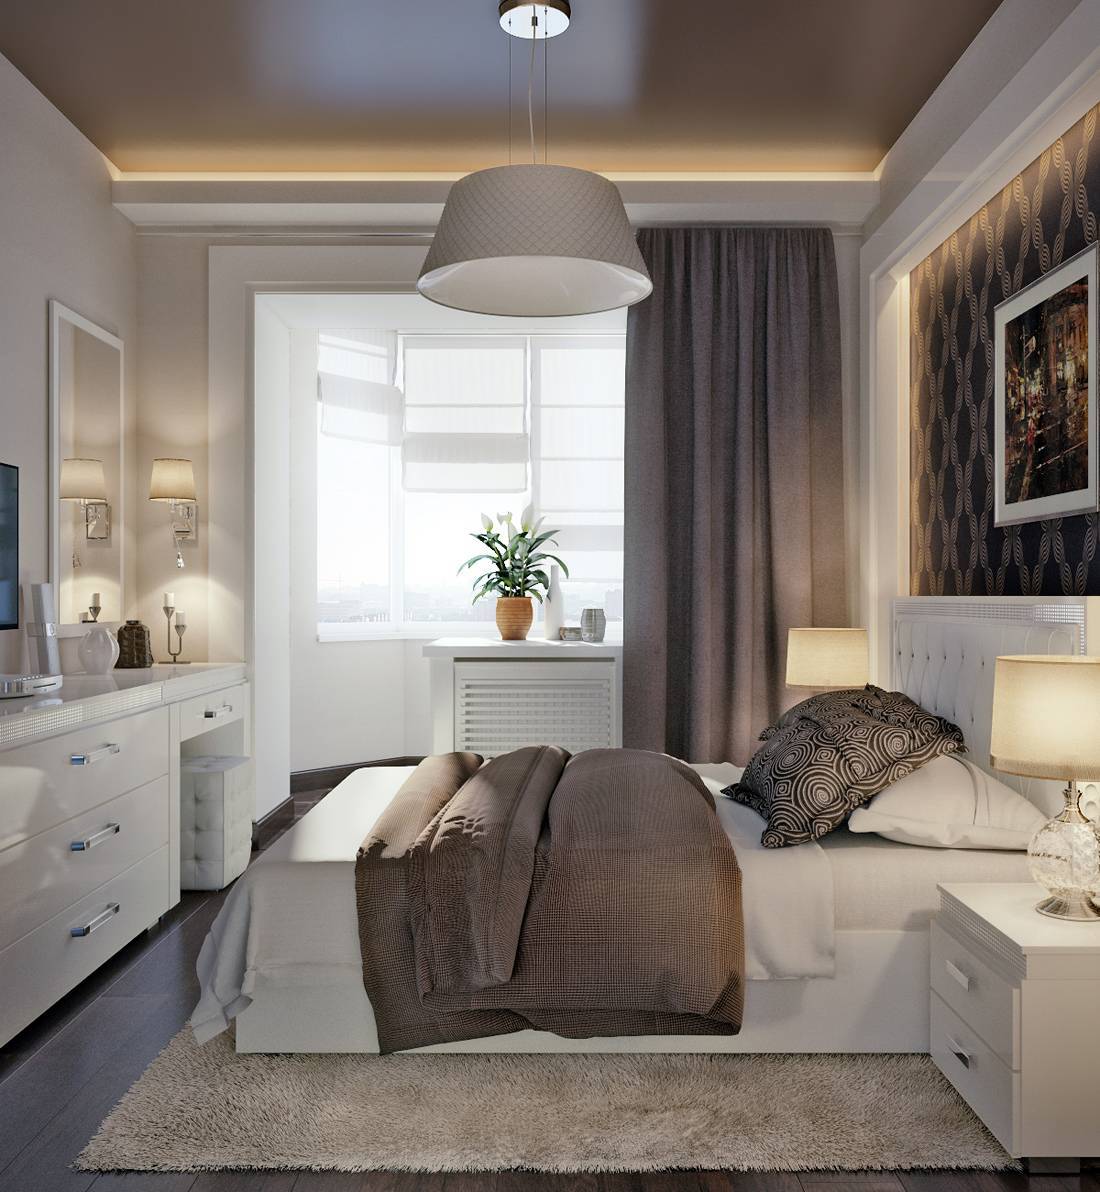 Спальня 14 кв. м.: современные идеи и лучшие решения по оформлению спаленварианты планировки и дизайна